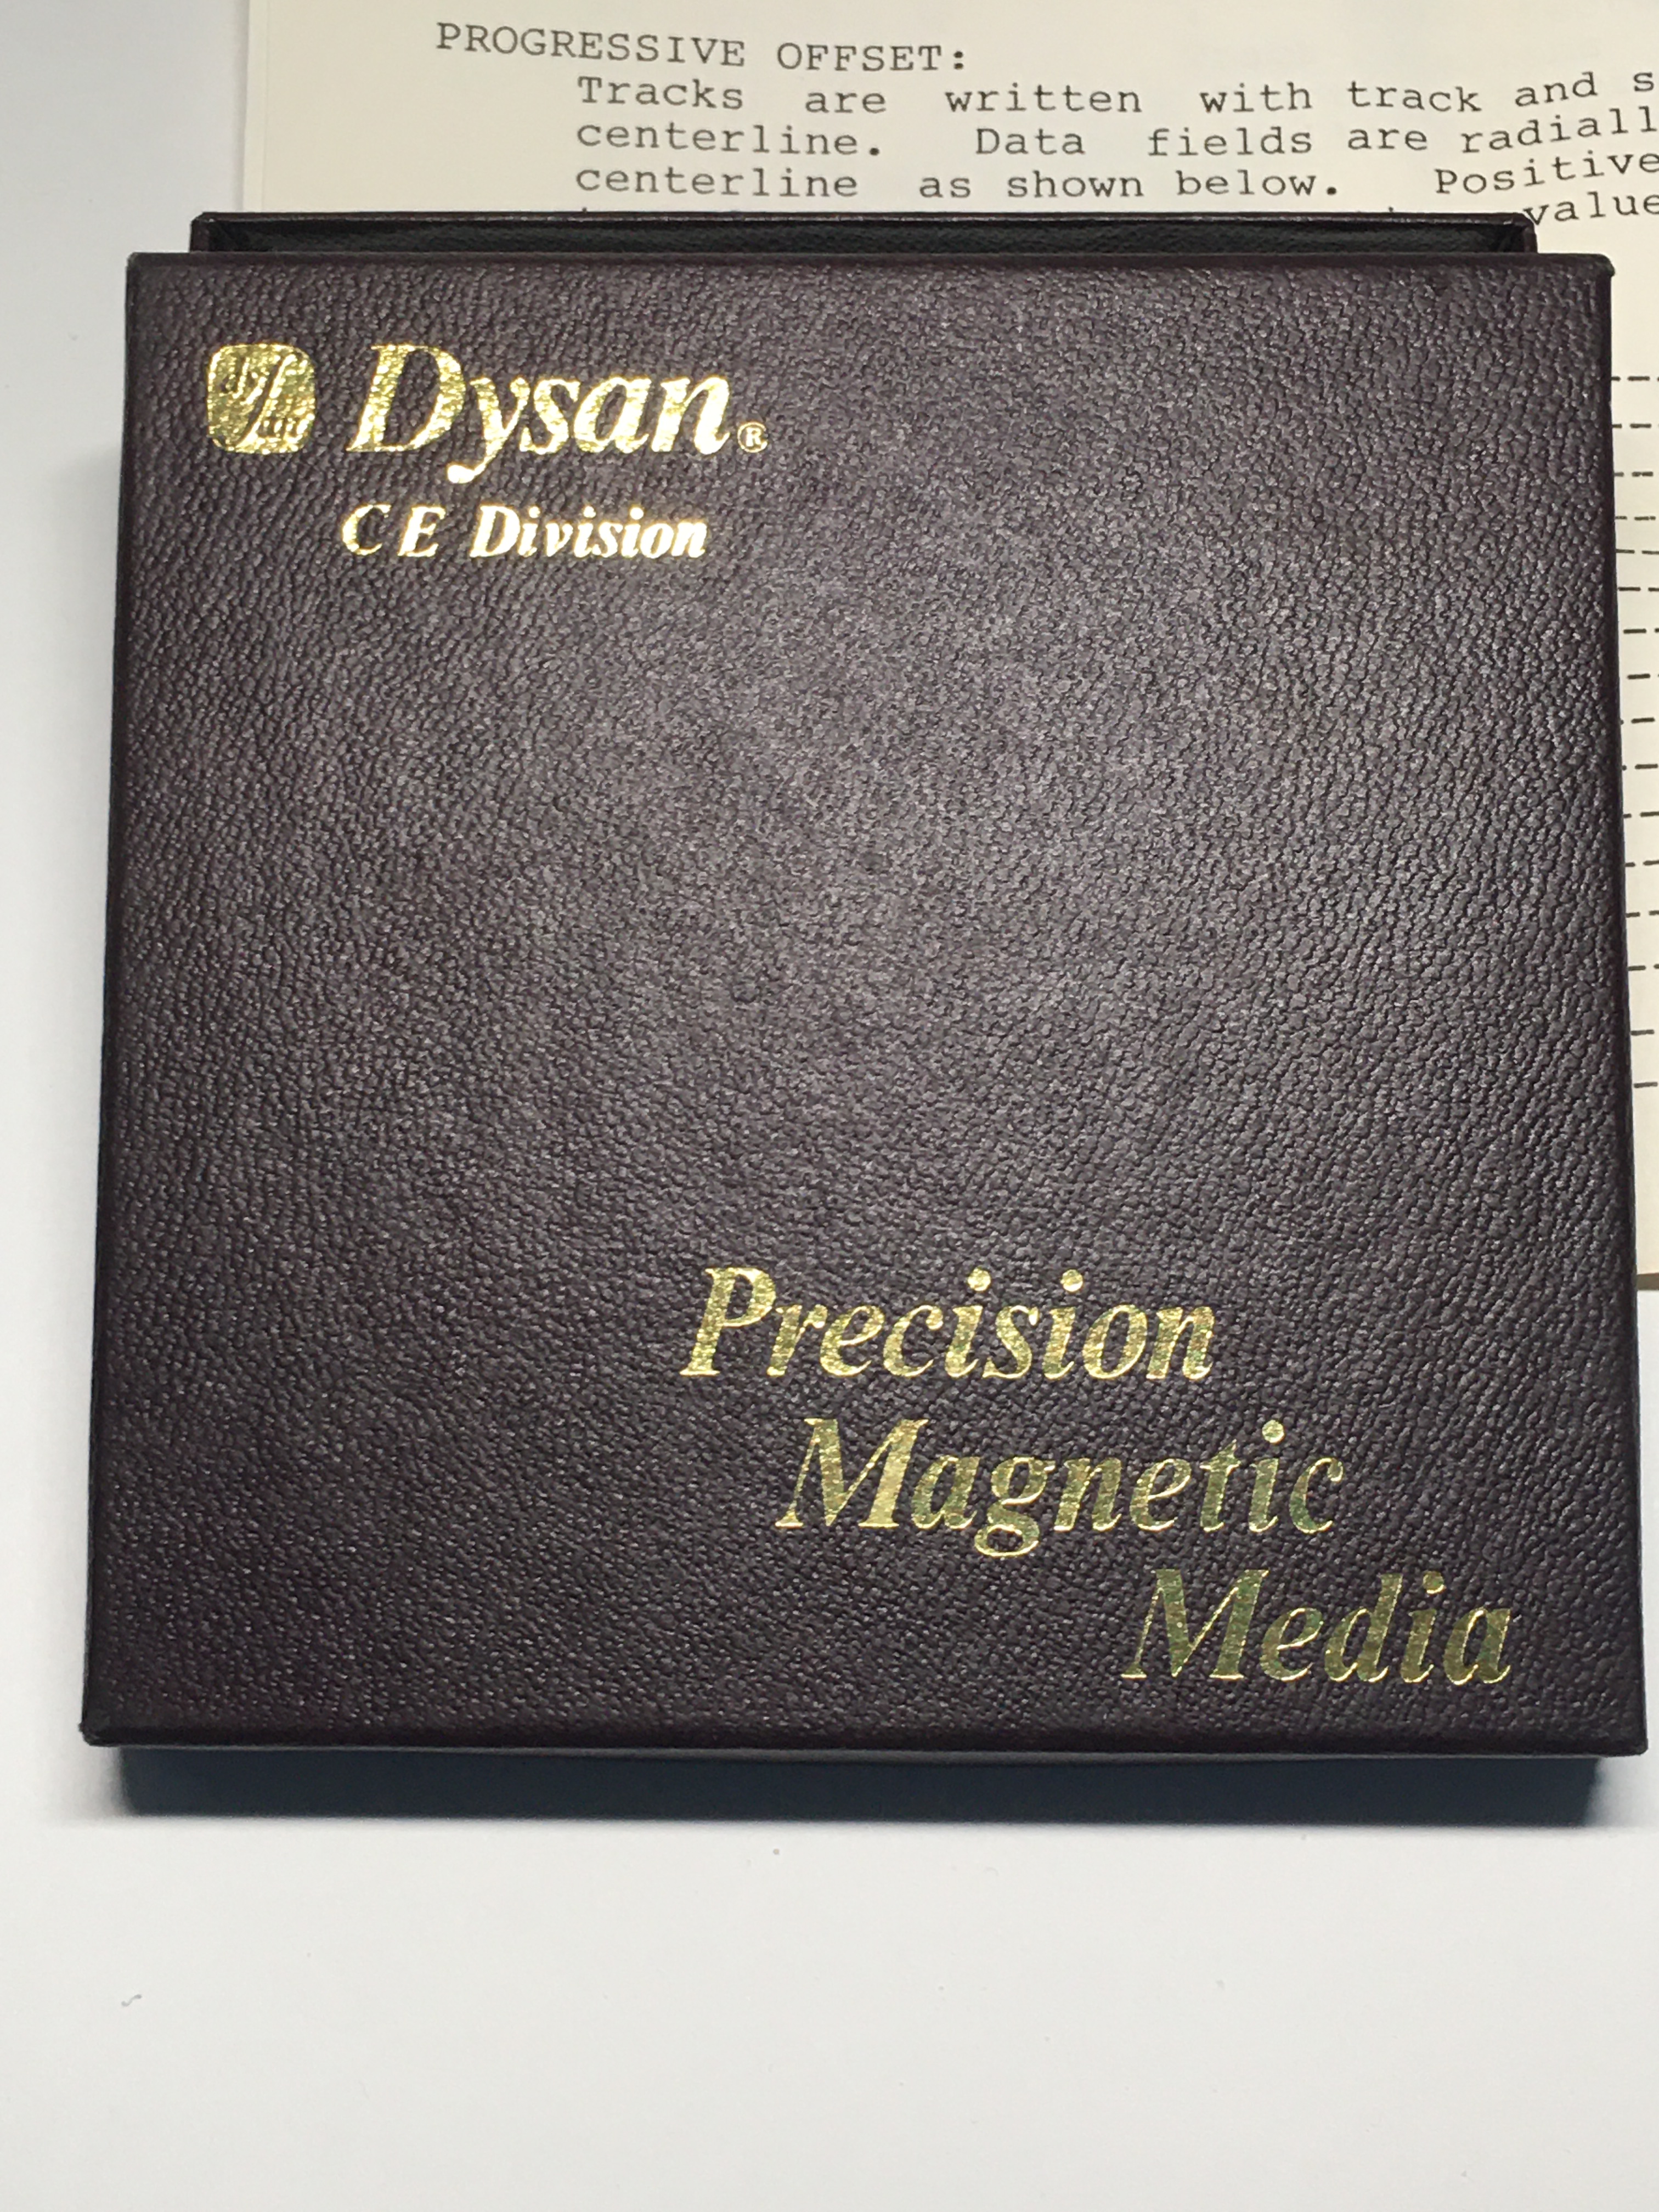 Dysan 3.5" Diskette Model 305-400 DDD 135tpi 300rpm or 600rmp - Click Image to Close